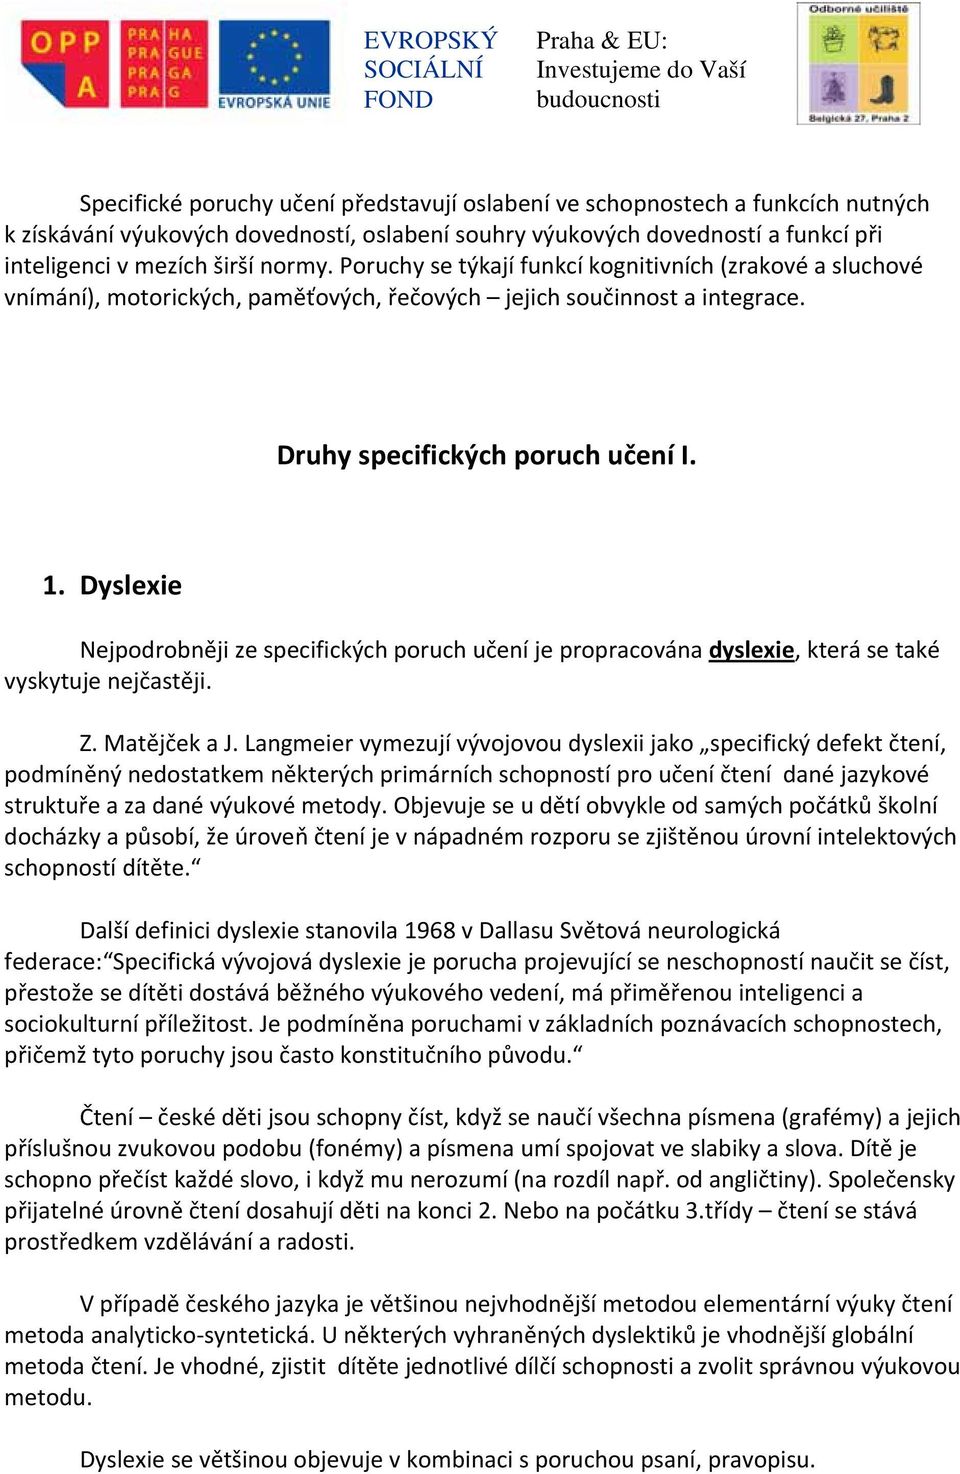 Dyslexie Nejpodrobněji ze specifických poruch učení je propracována dyslexie, která se také vyskytuje nejčastěji. Z. Matějček a J.